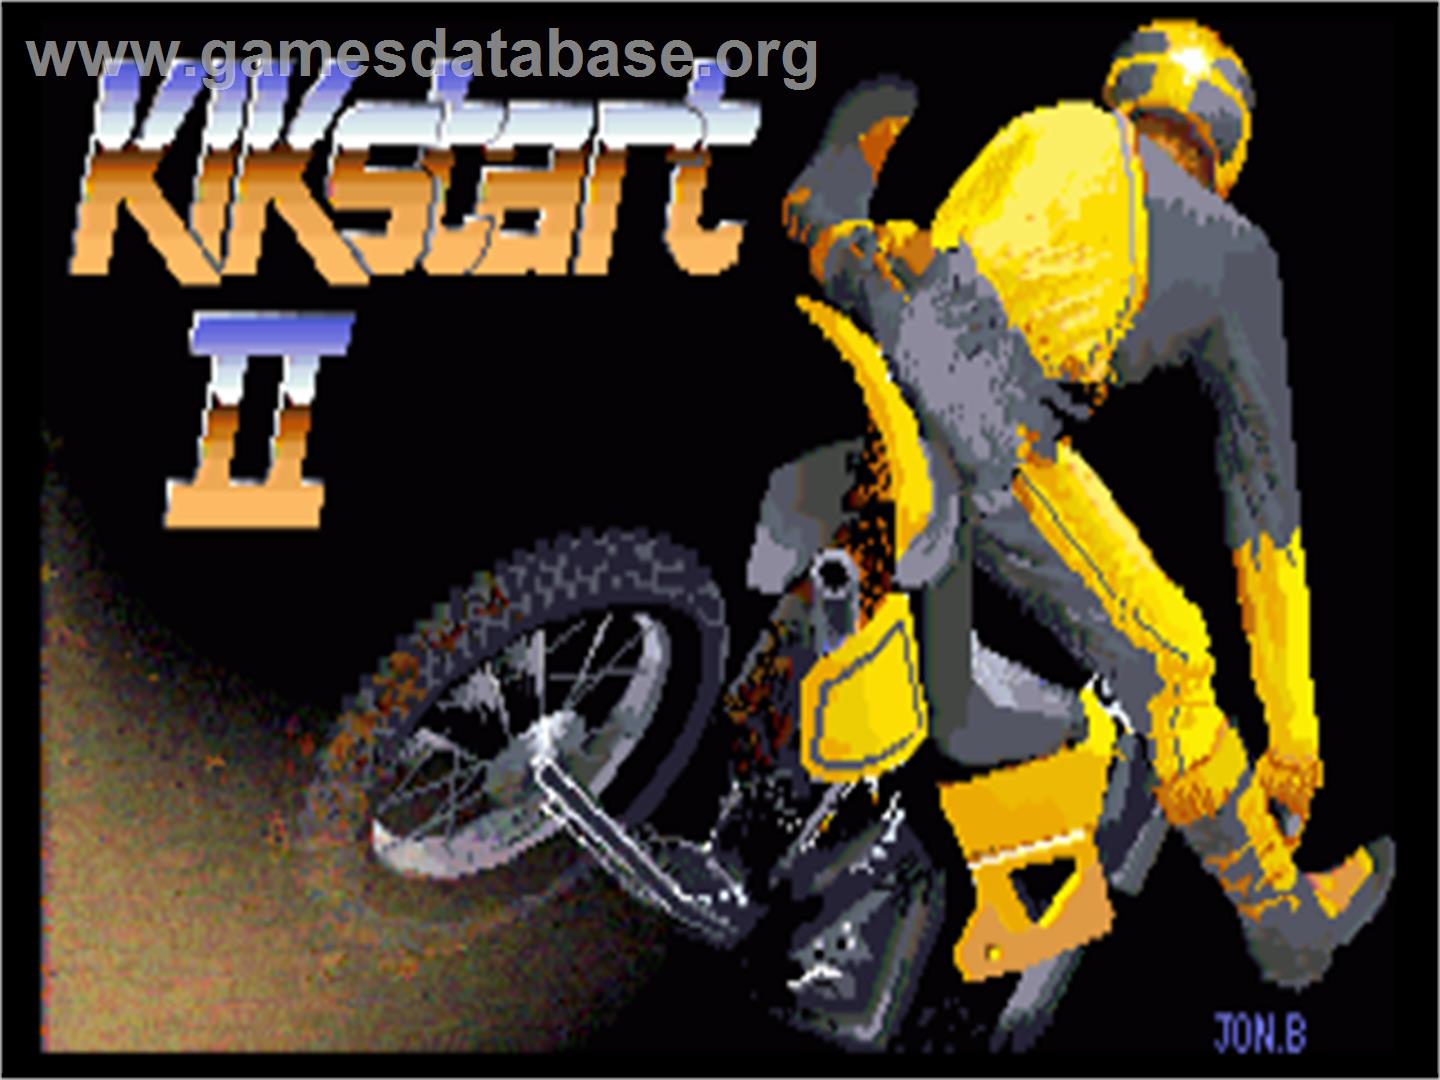 Kikstart 2 - Commodore Amiga - Artwork - Title Screen